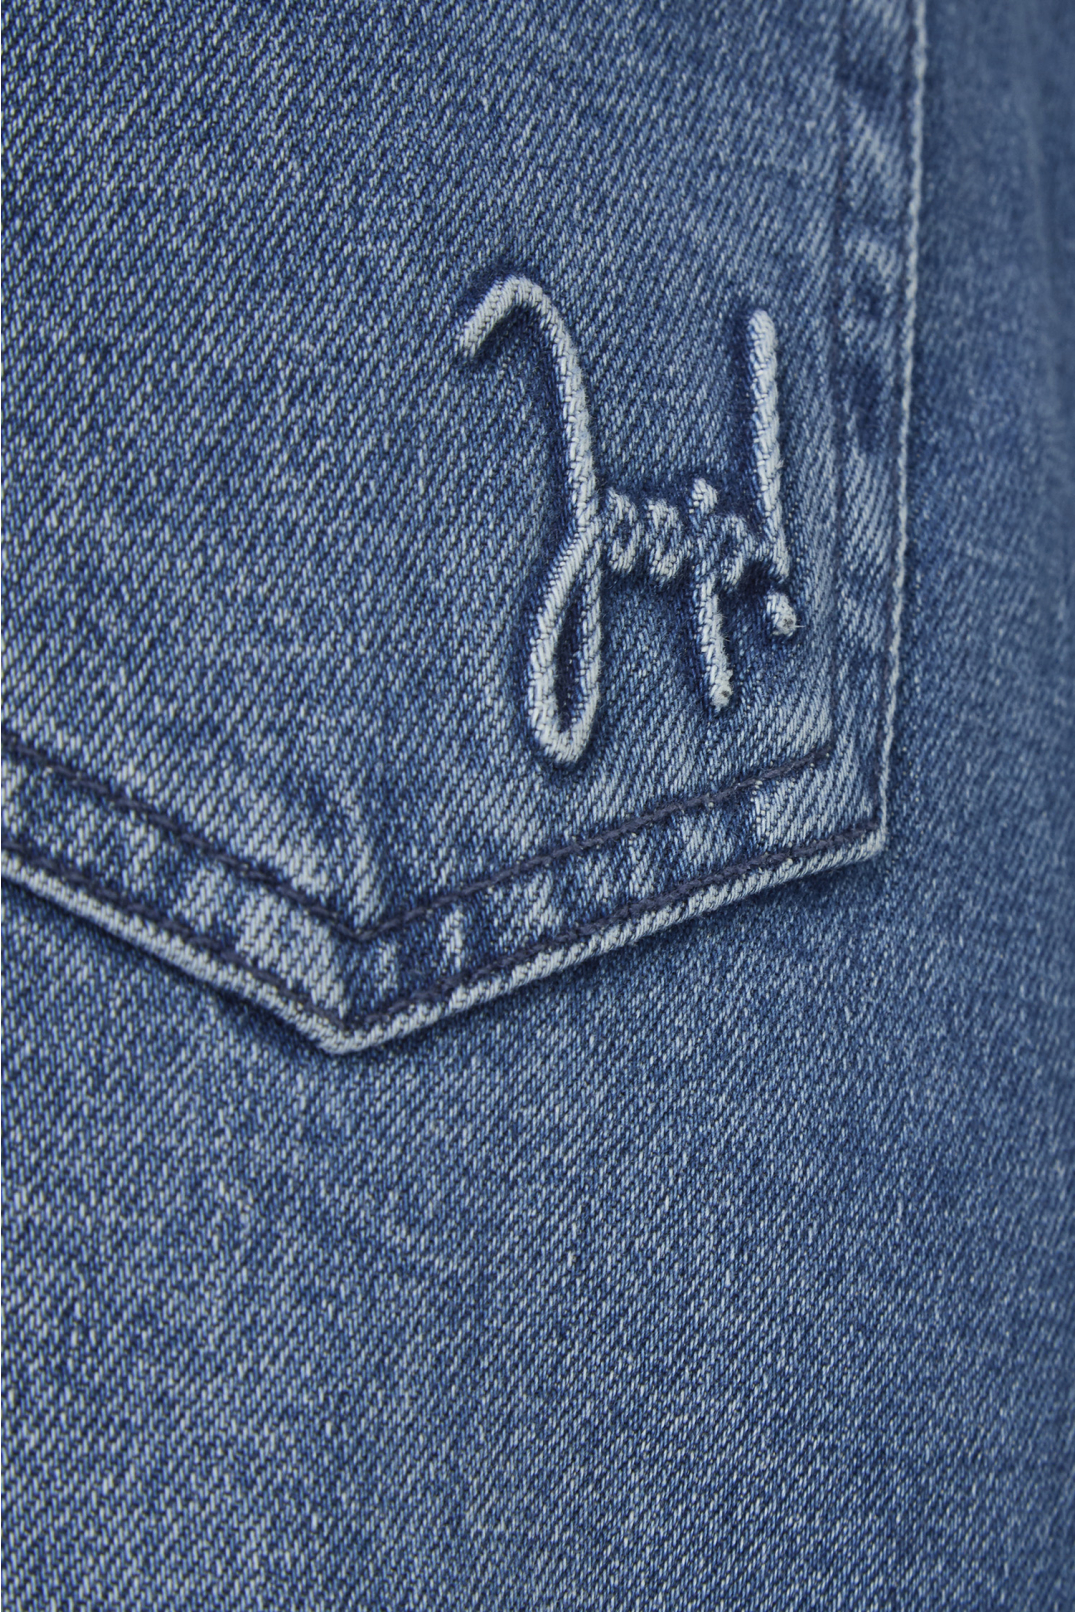 Женская синяя джинсовая юбка - 4